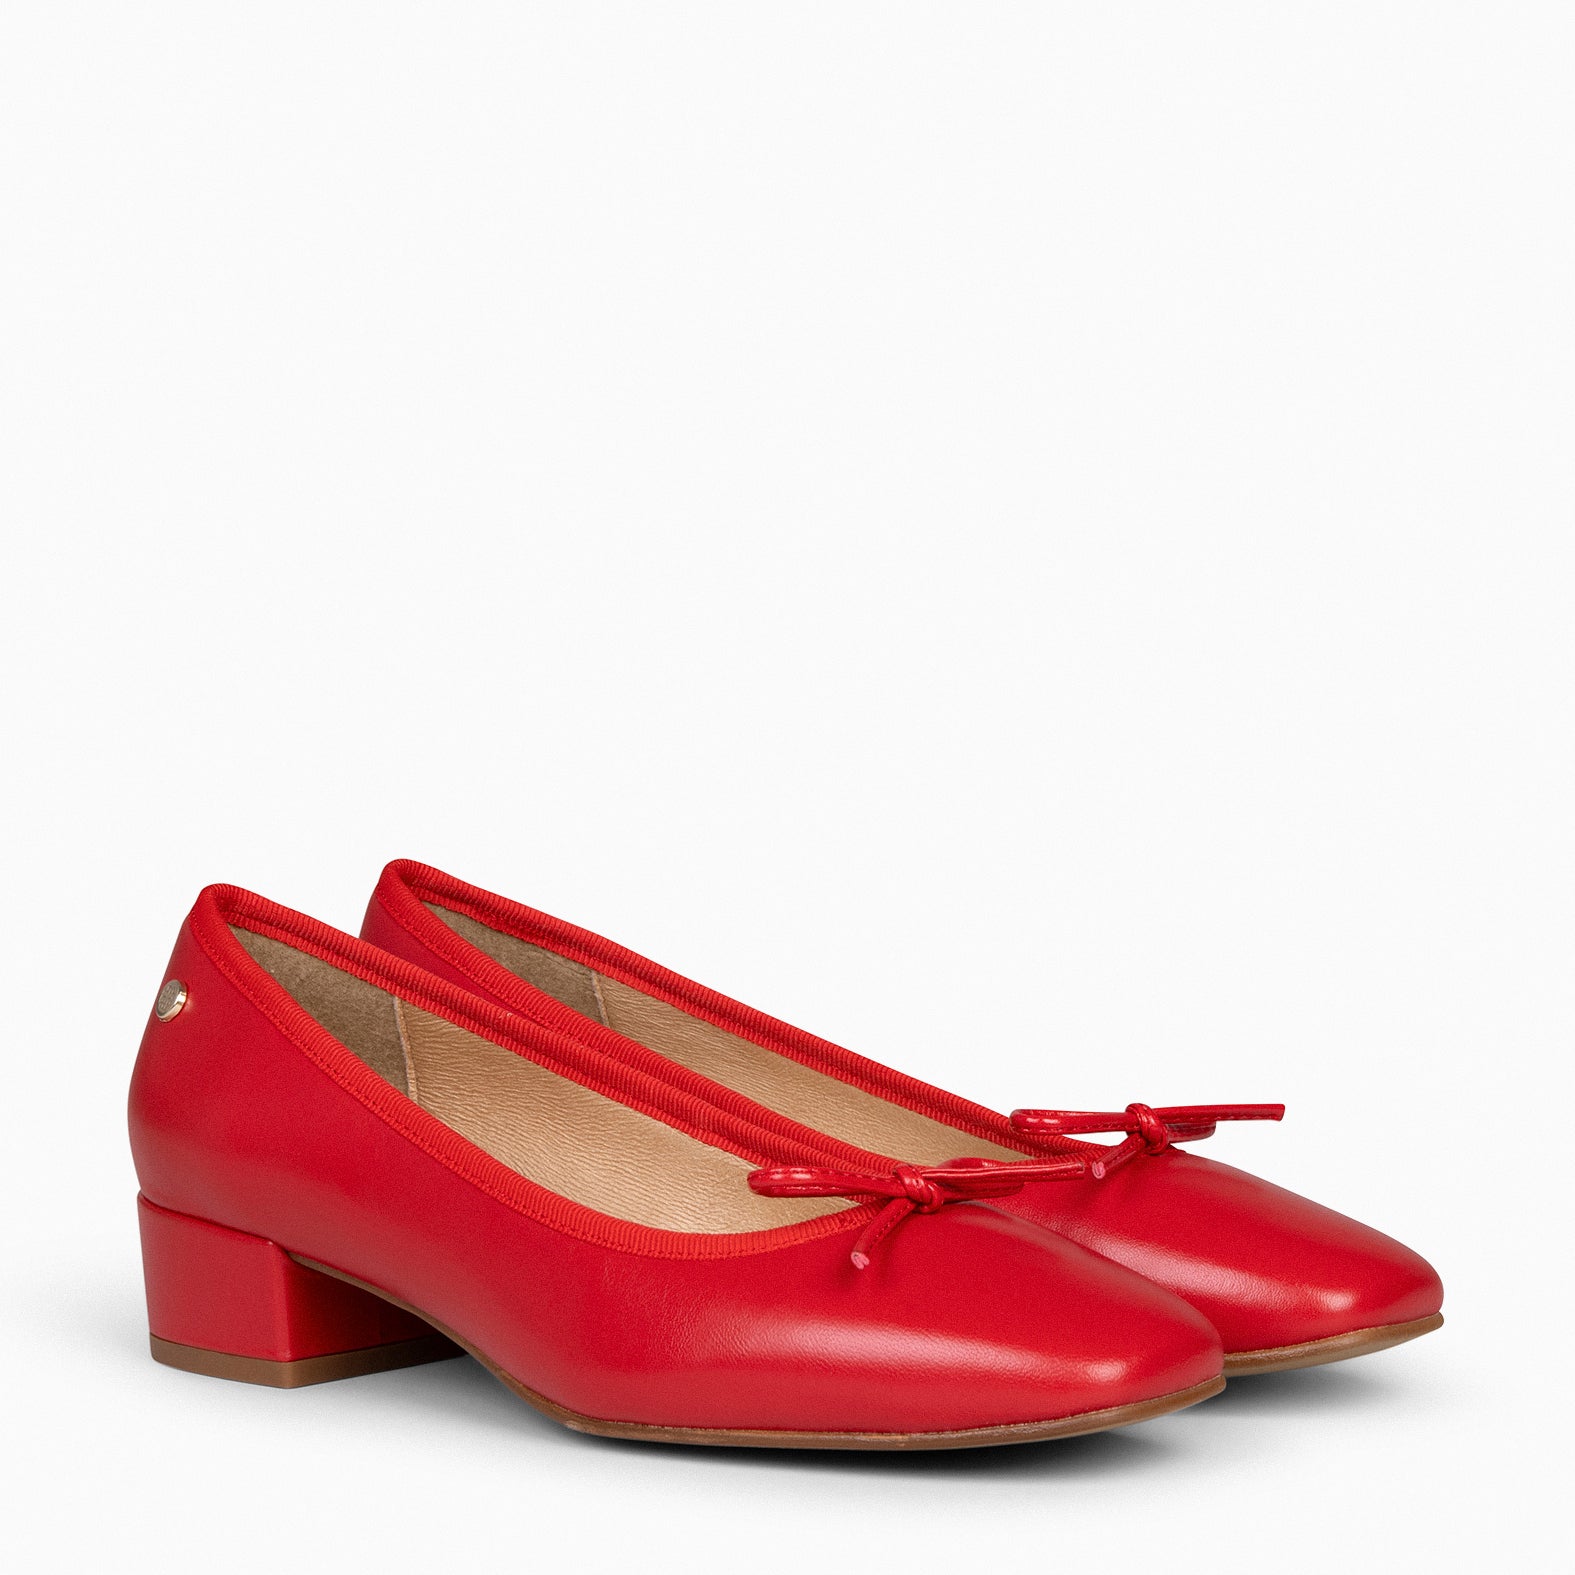 OPERA – RED ballerina with heel